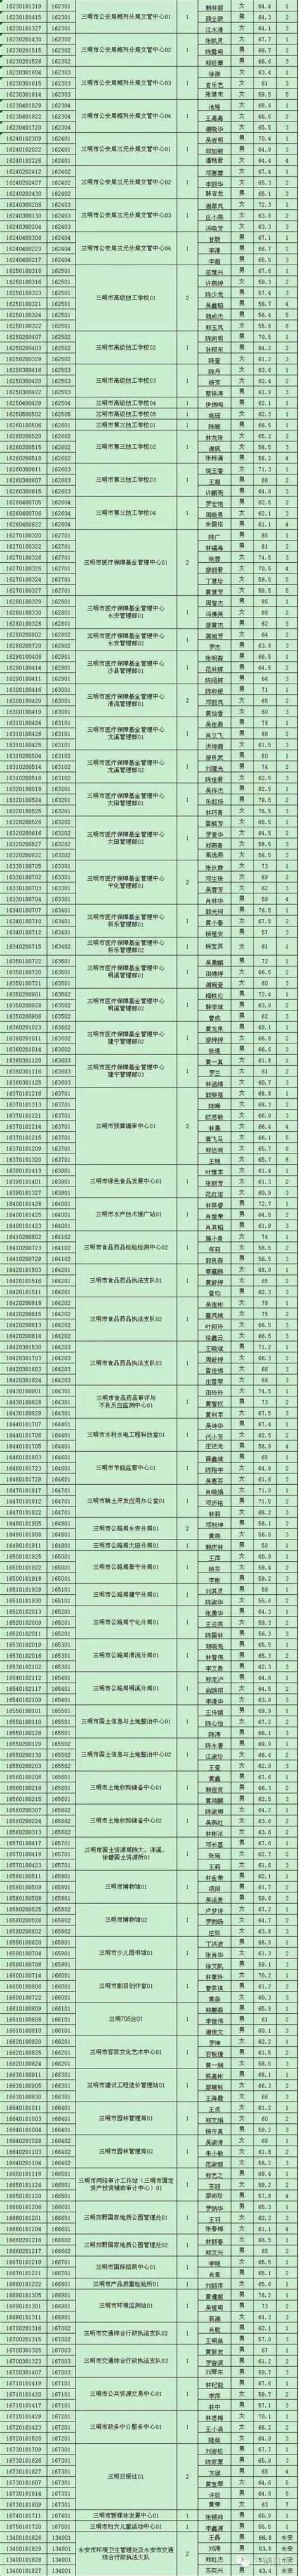 三明市属事业单位面试名单出炉_三明新闻_海峡网